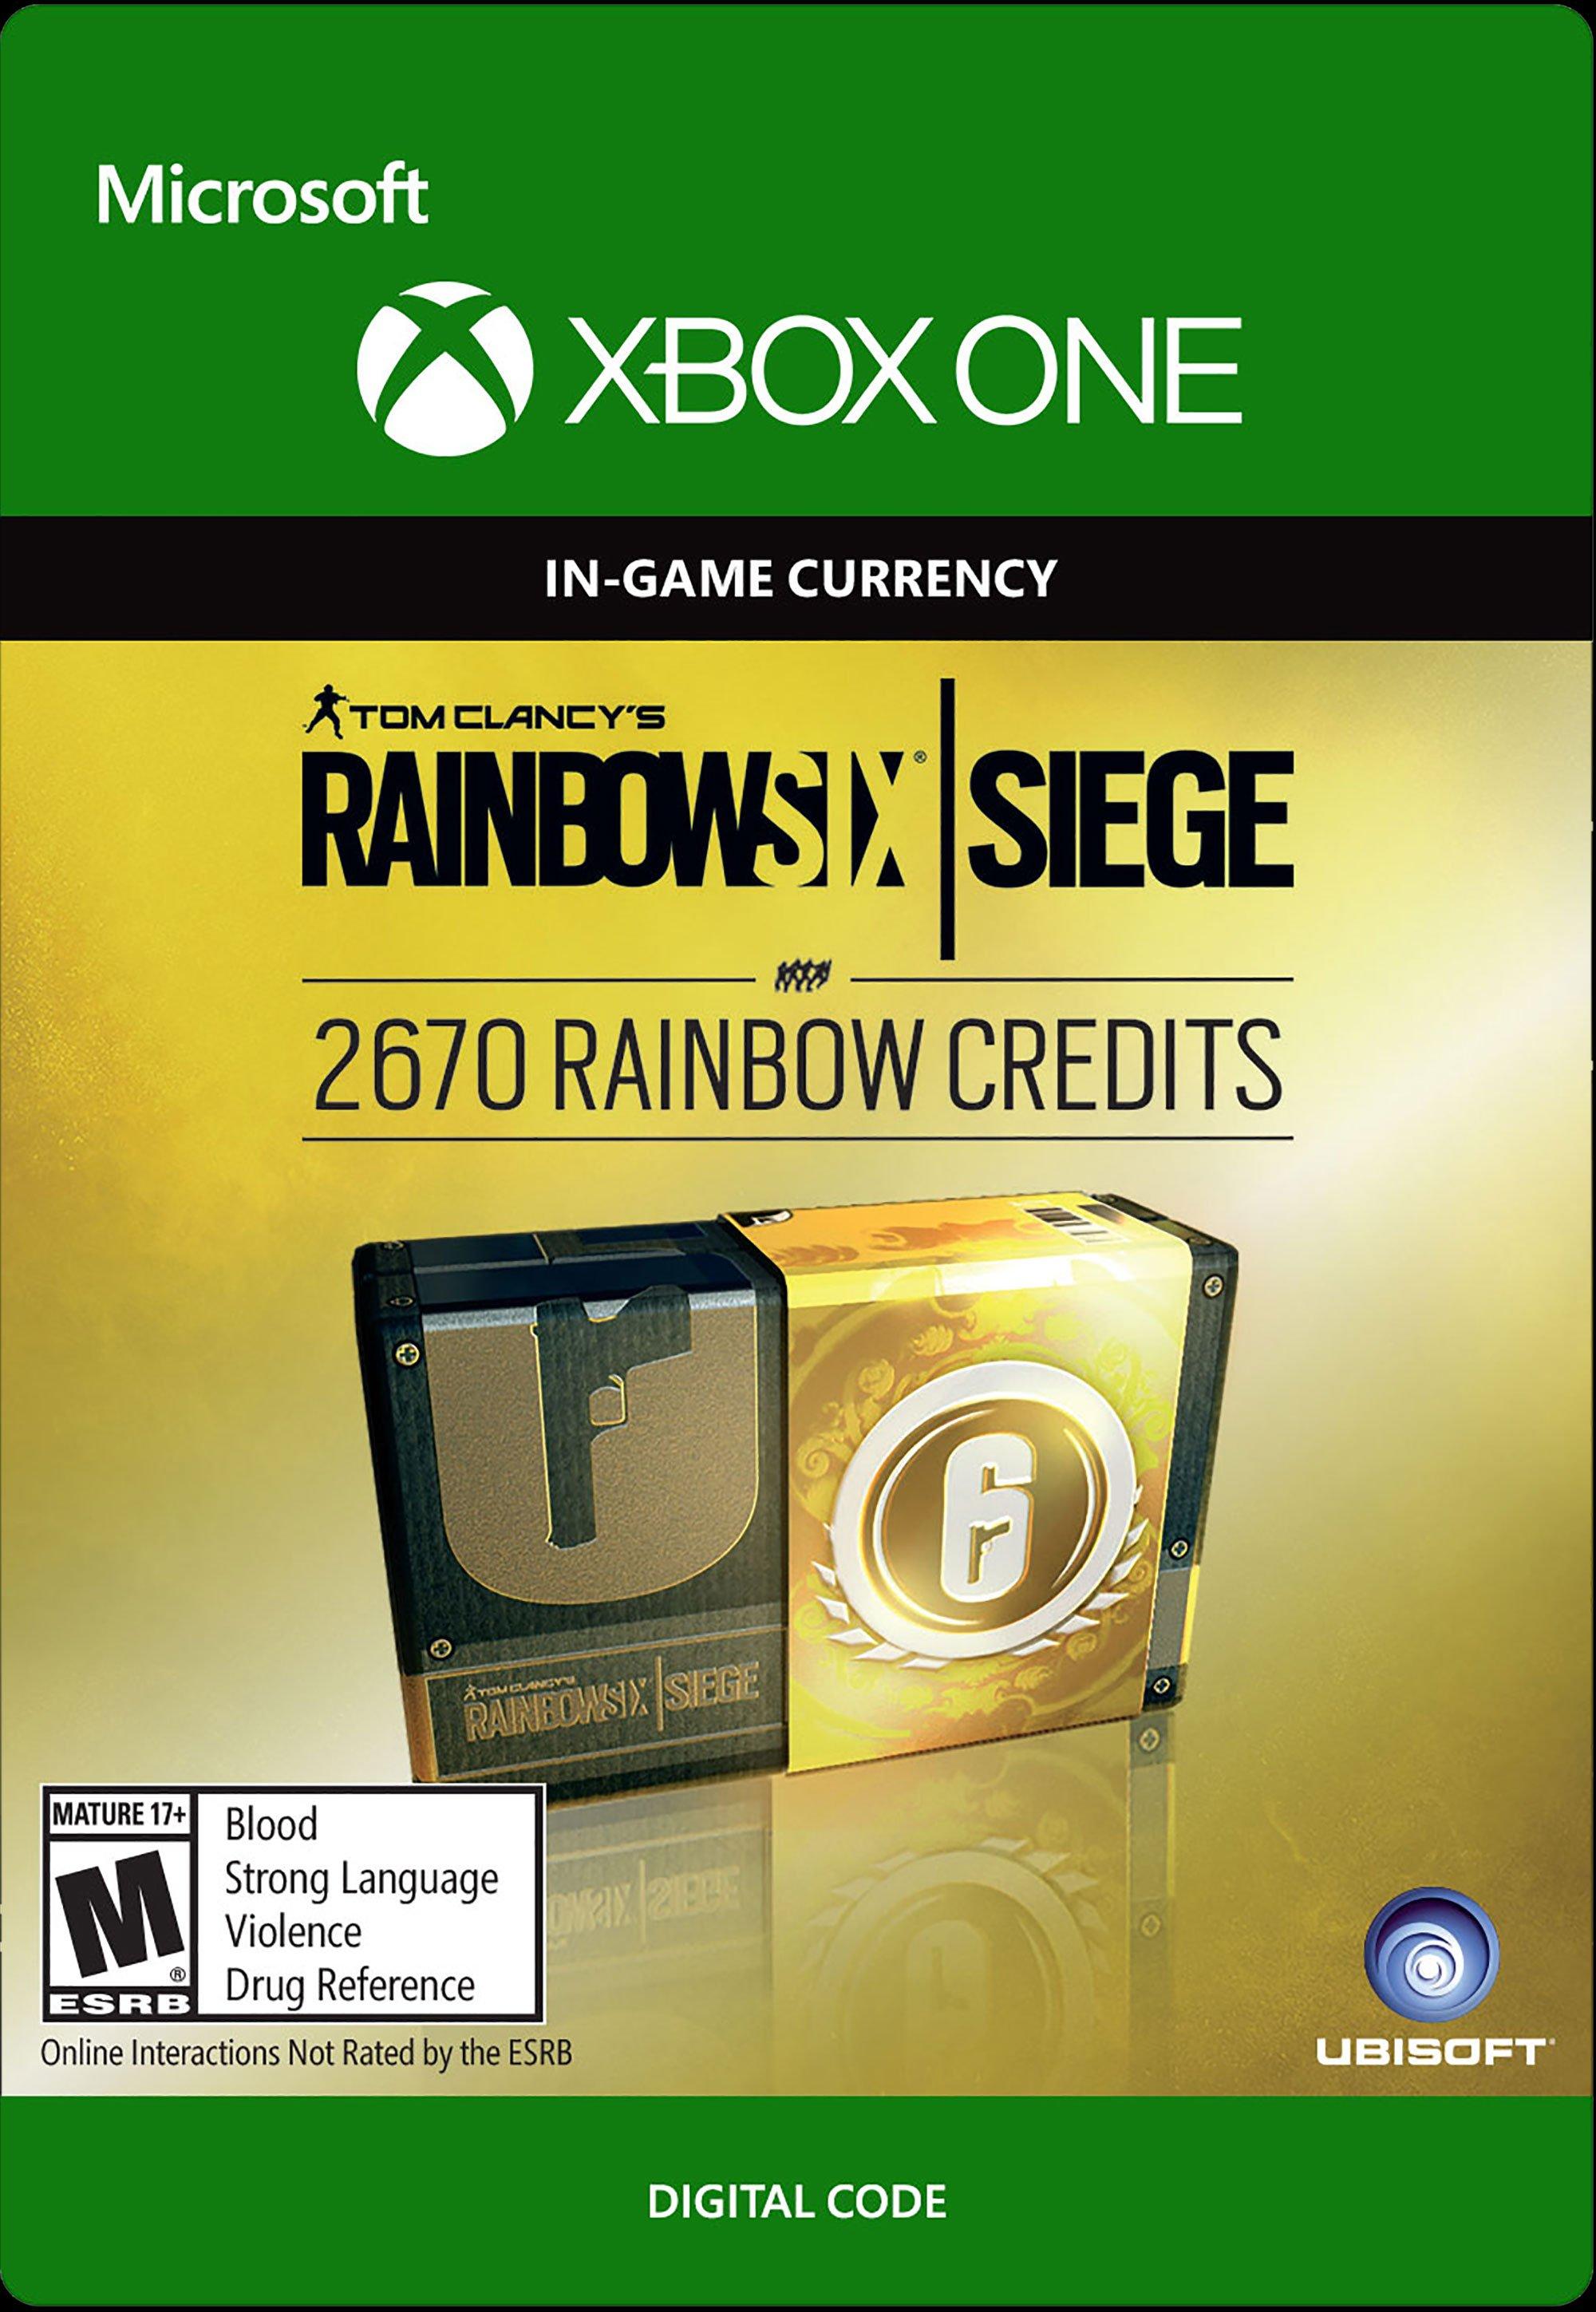 Tom Clancy's Rainbow Six: Siege 2,670 Rainbow Credits